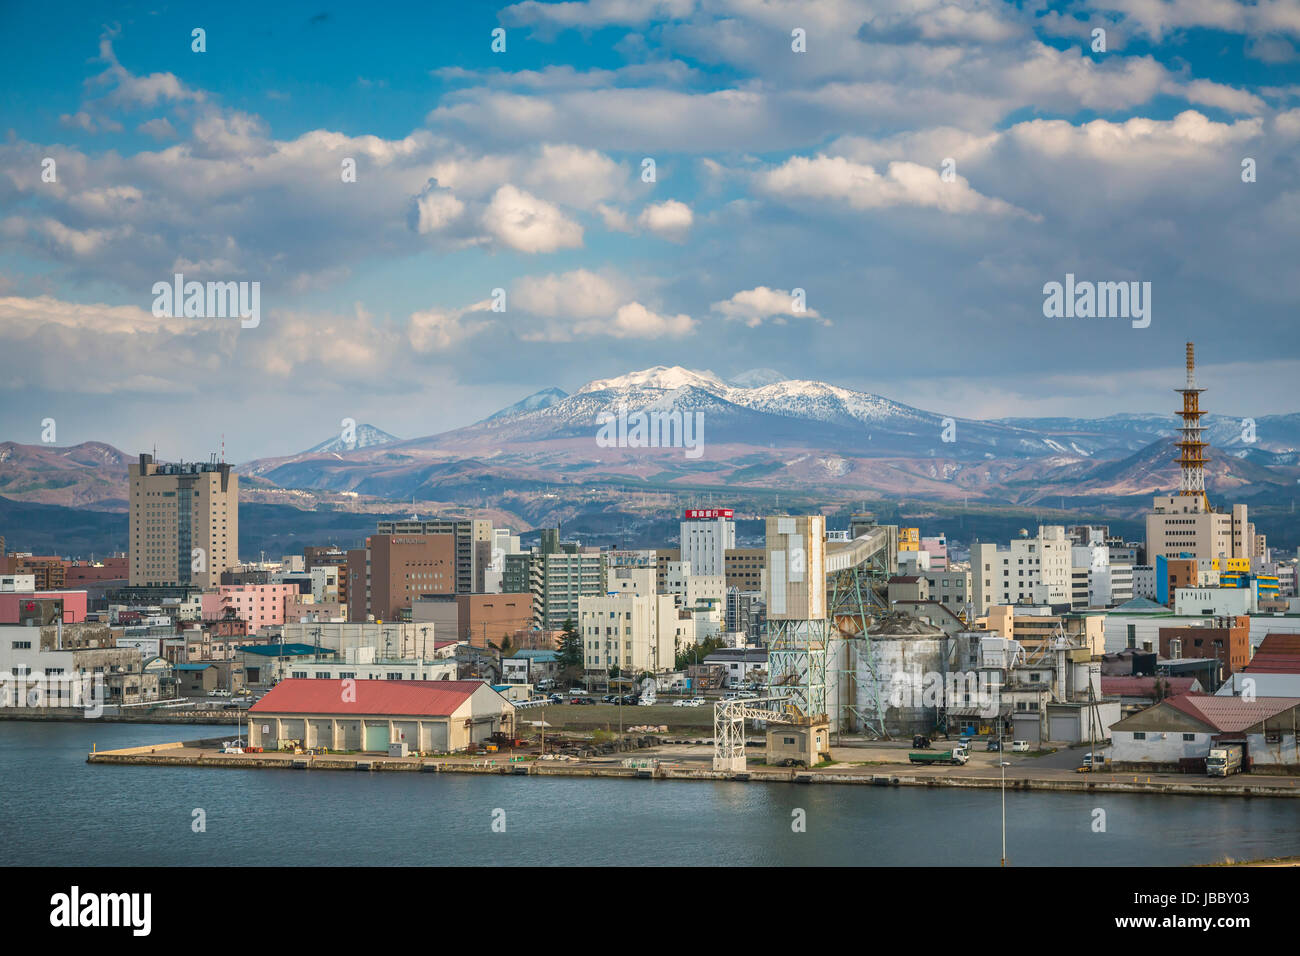 La ville de port de la ville d'Aomori, au nord du Japon, de la région de Tōhoku. Banque D'Images